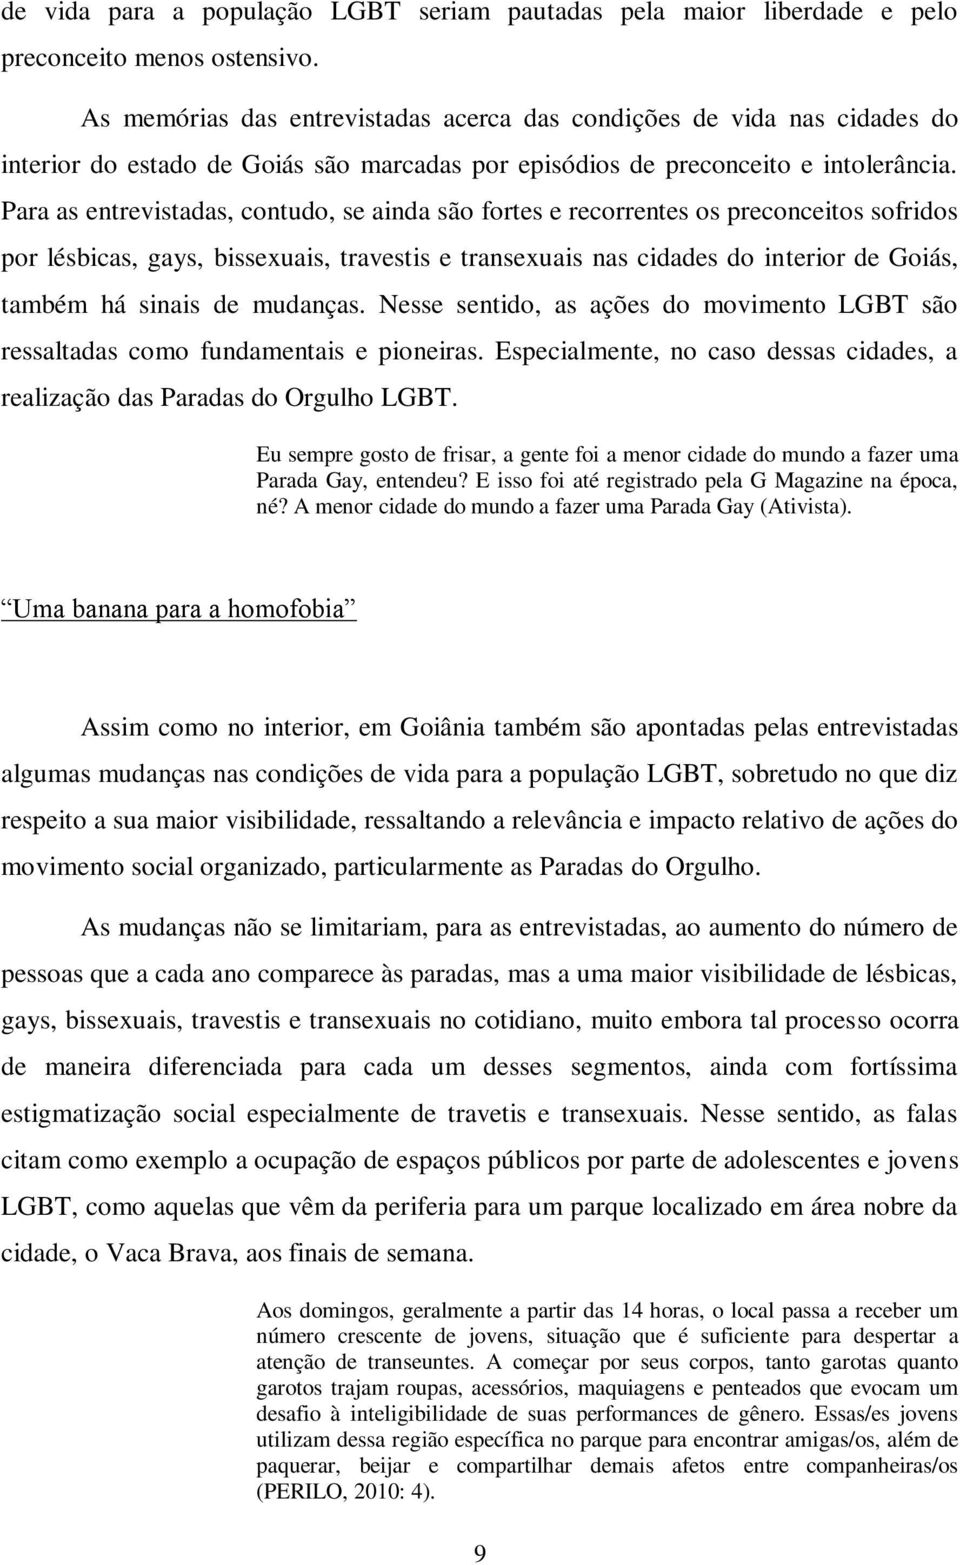 Para as entrevistadas, contudo, se ainda são fortes e recorrentes os preconceitos sofridos por lésbicas, gays, bissexuais, travestis e transexuais nas cidades do interior de Goiás, também há sinais